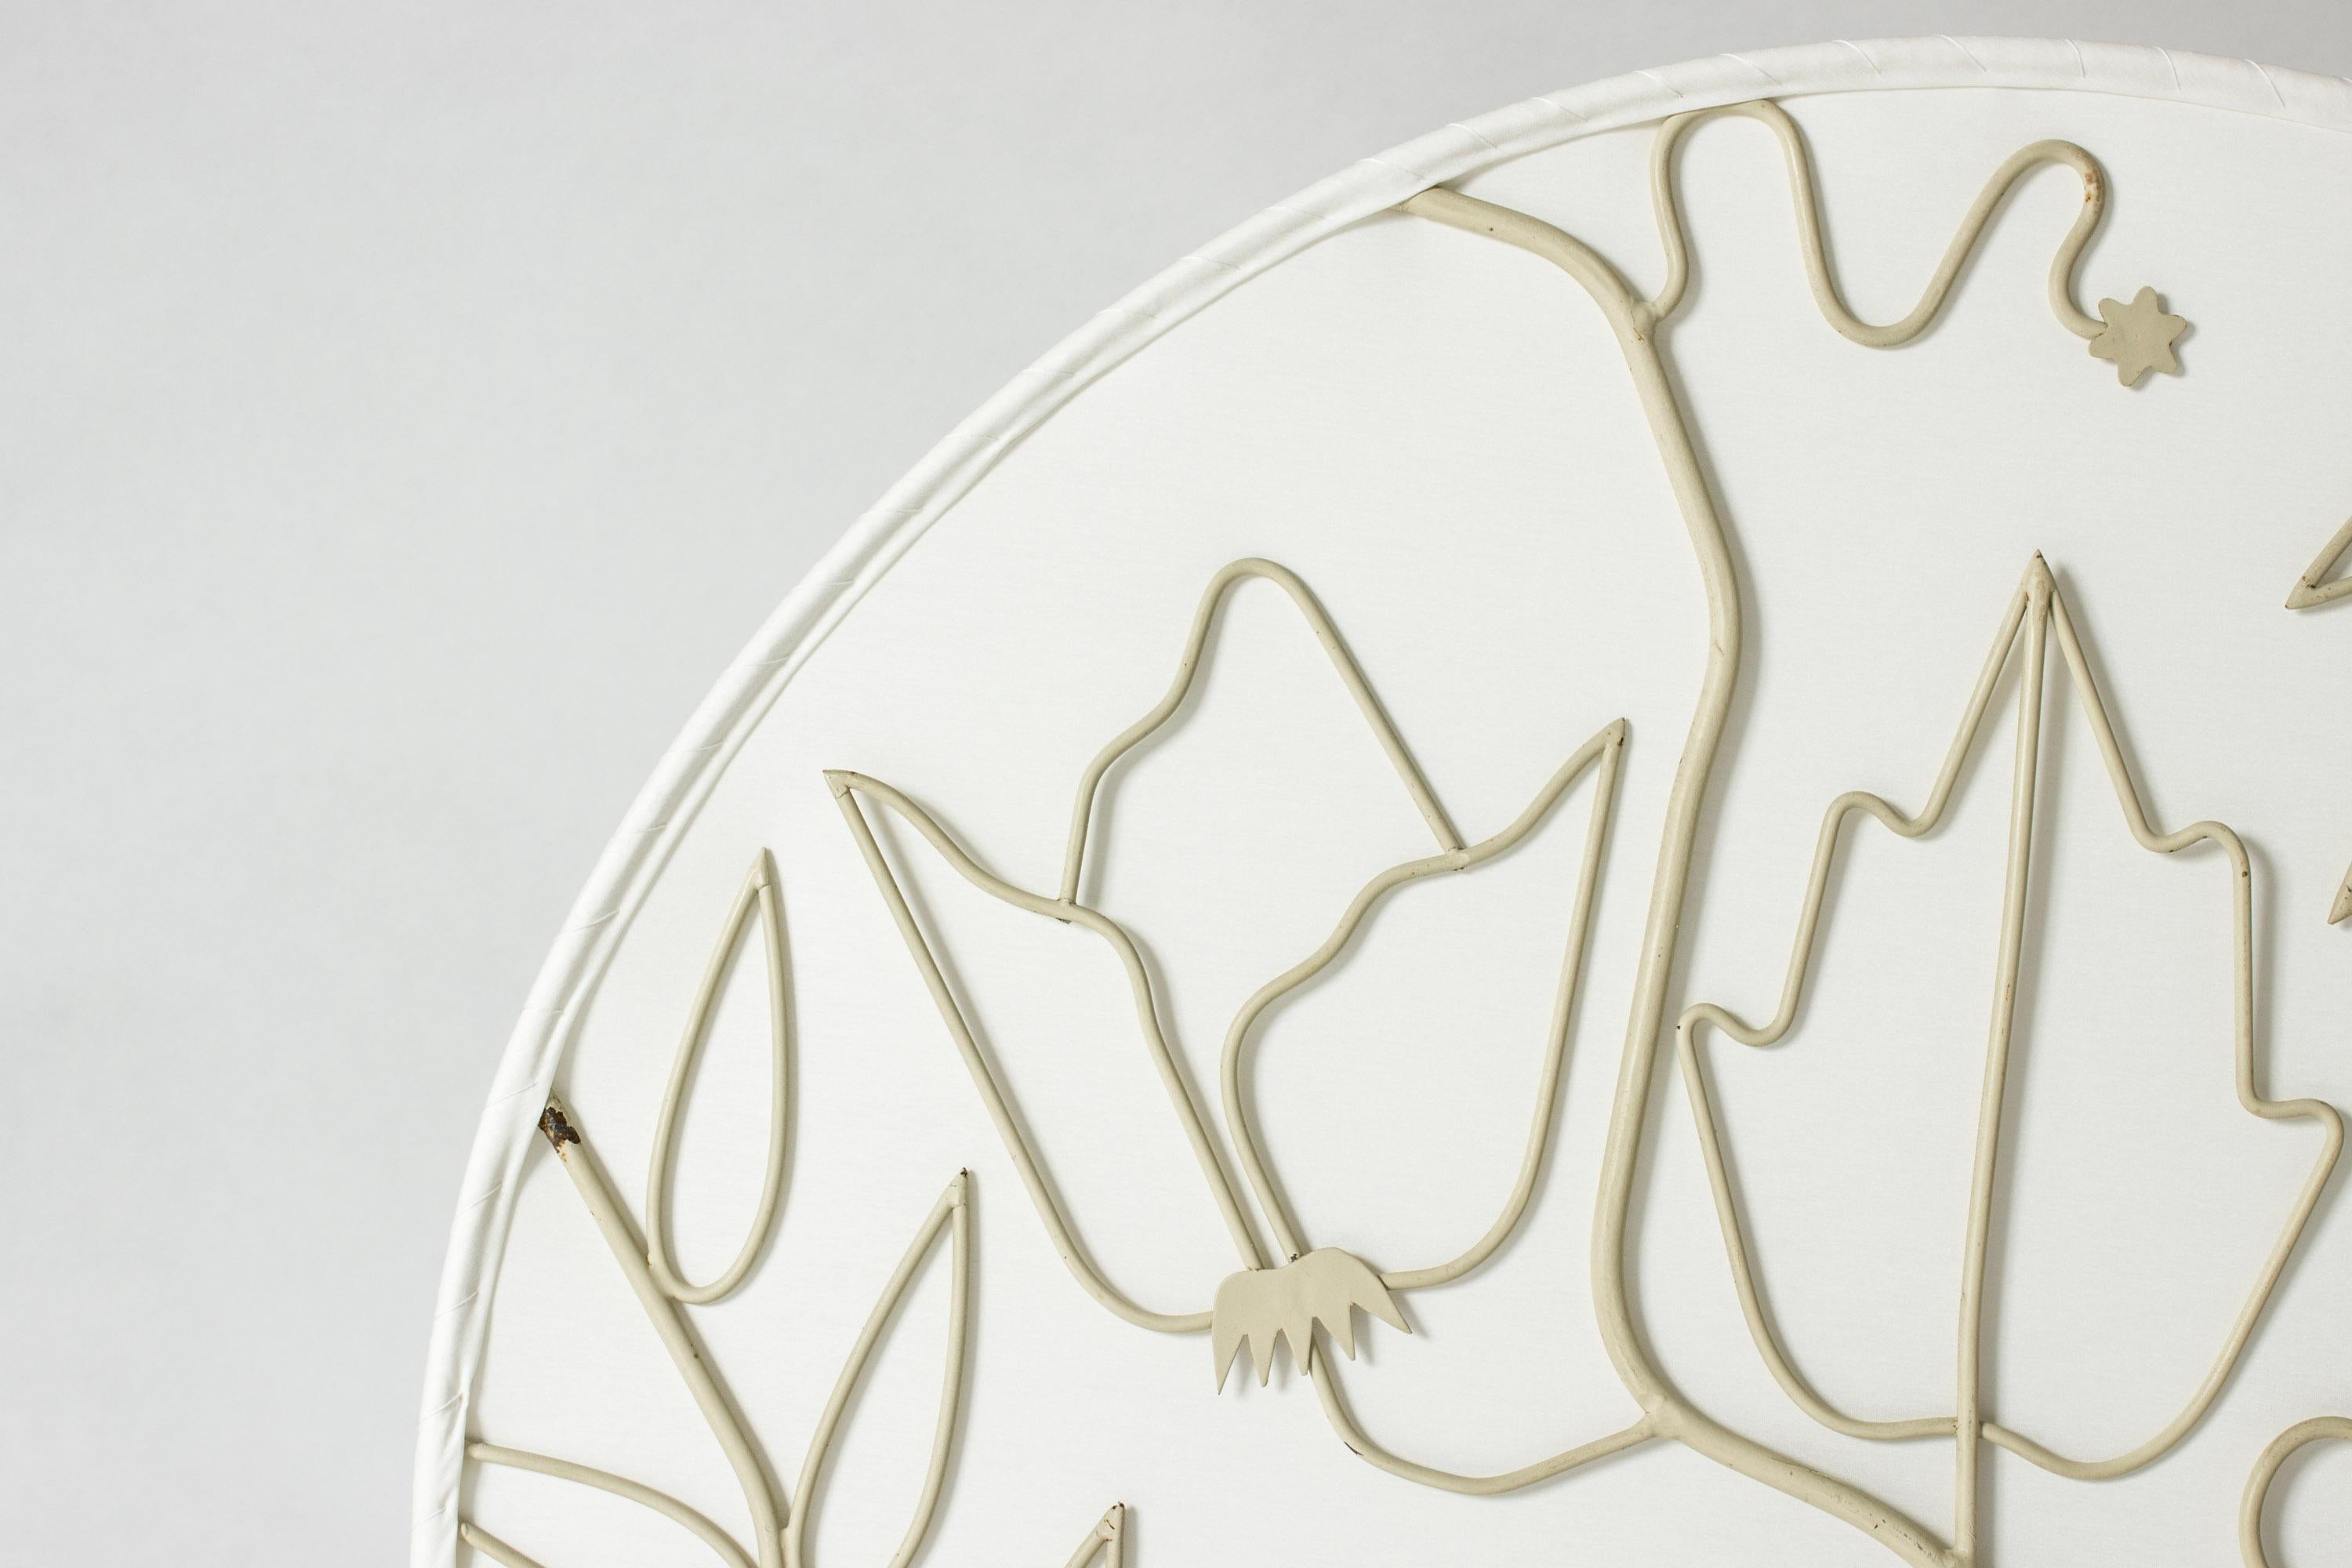 Rare et magnifique plafonnier encastré de Hans Bergström. Fabriqué avec un cadre rond et laqué avec un motif aérien de fleurs et de feuilles créant un effet d'ombre sur le tissu de soie. Un équilibre entre poésie et élégance.